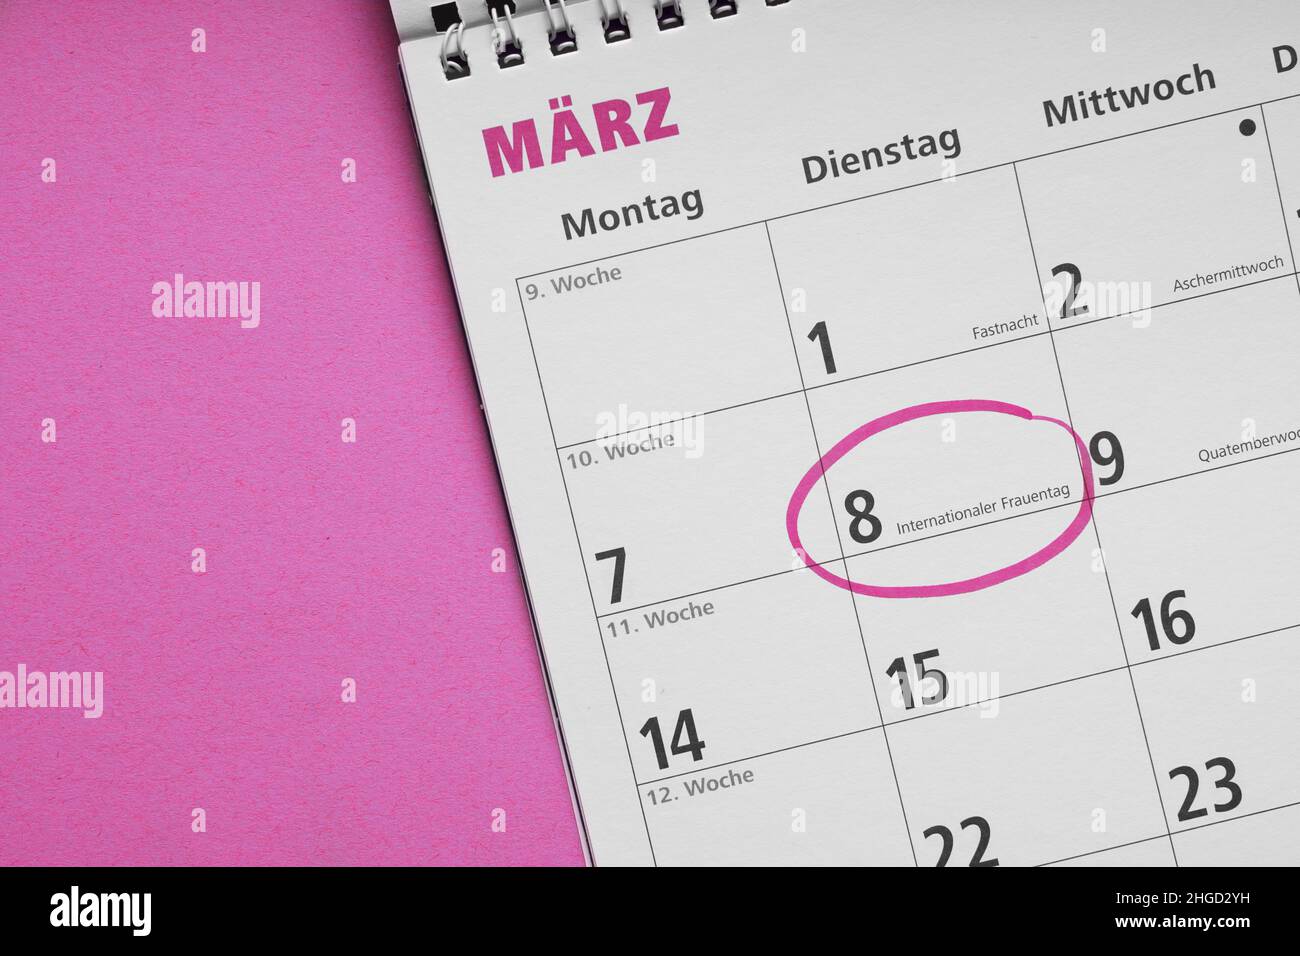 Internationaler Frauentag o día internacional de la mujer el 8 de marzo está rodeado de un círculo en el calendario alemán Foto de stock